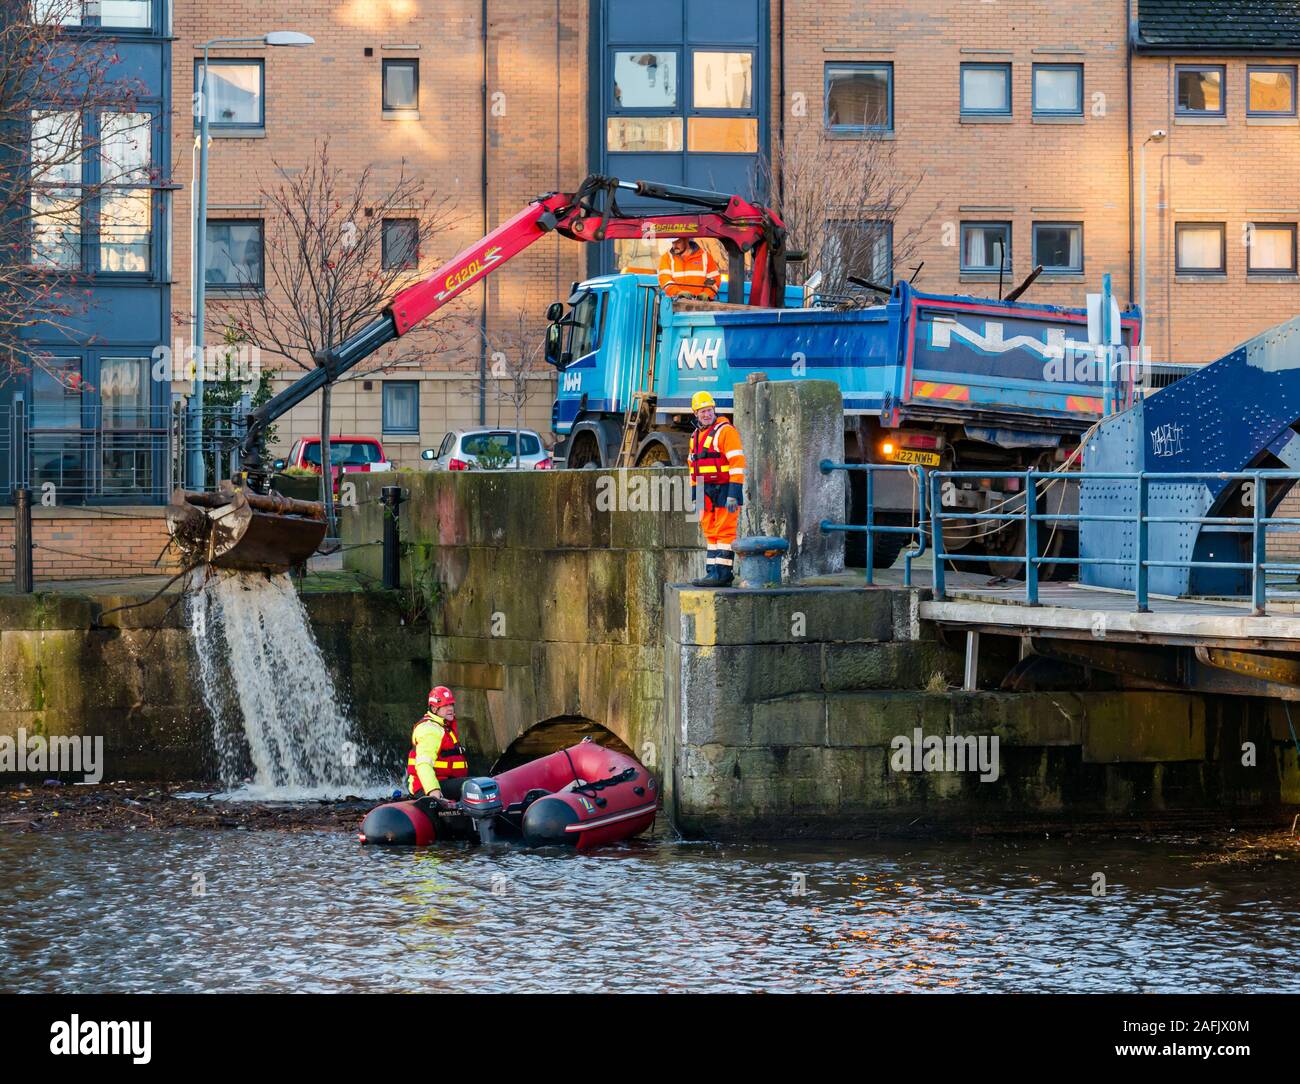 Nettoyage des débris et déchets dans l'eau de Leith river par hommes travaillant à la pneumatique à coque rigide & camion avec grue, Édimbourg, Écosse, Royaume-Uni Banque D'Images